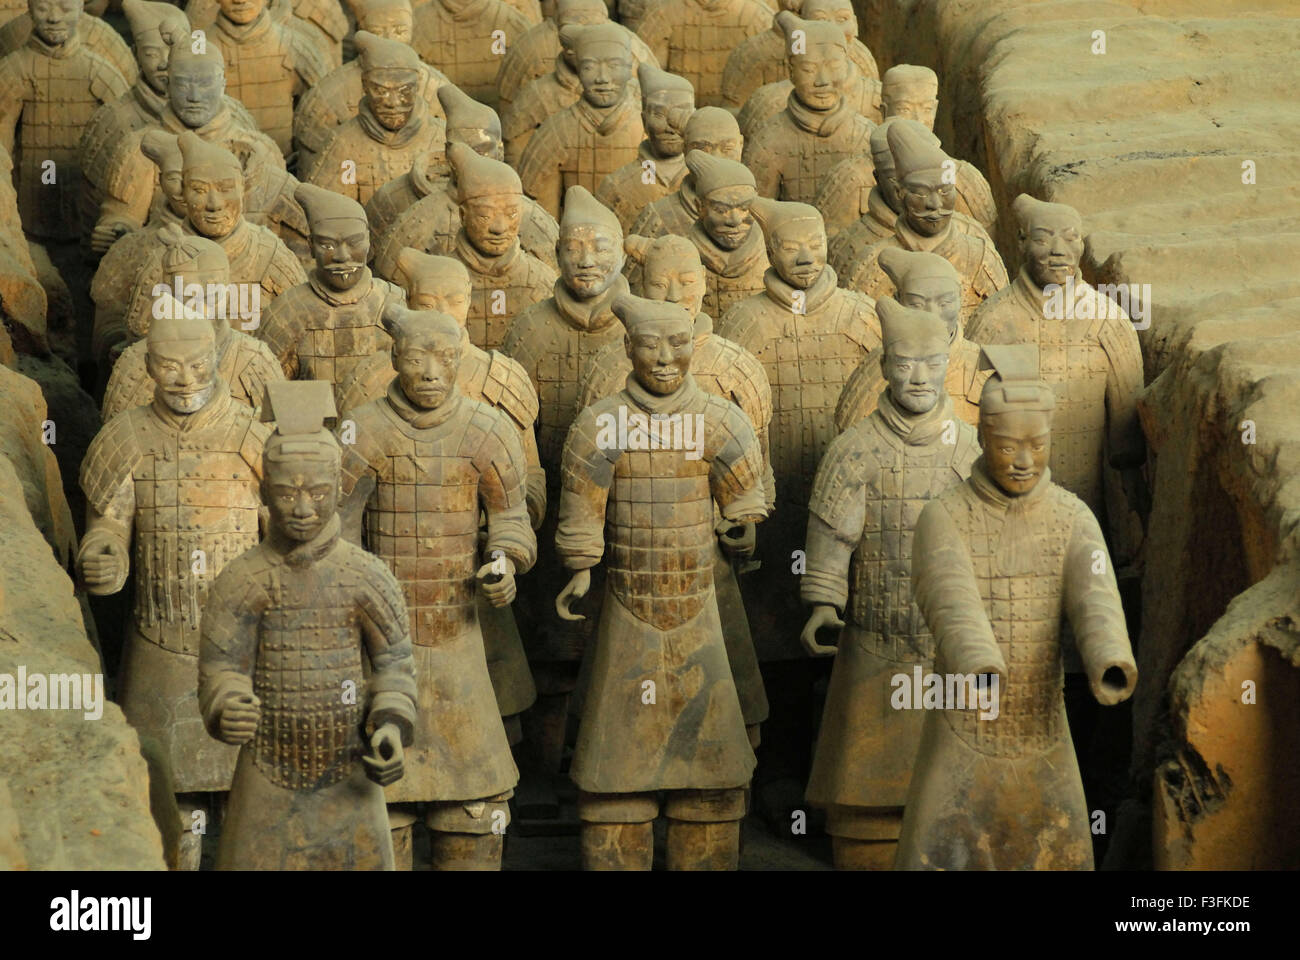 Des statues de guerriers en terre cuite dans la fosse 1 de l'armée de terre cuite ; ; ; ; dynastie des Qin Xian Chine Banque D'Images